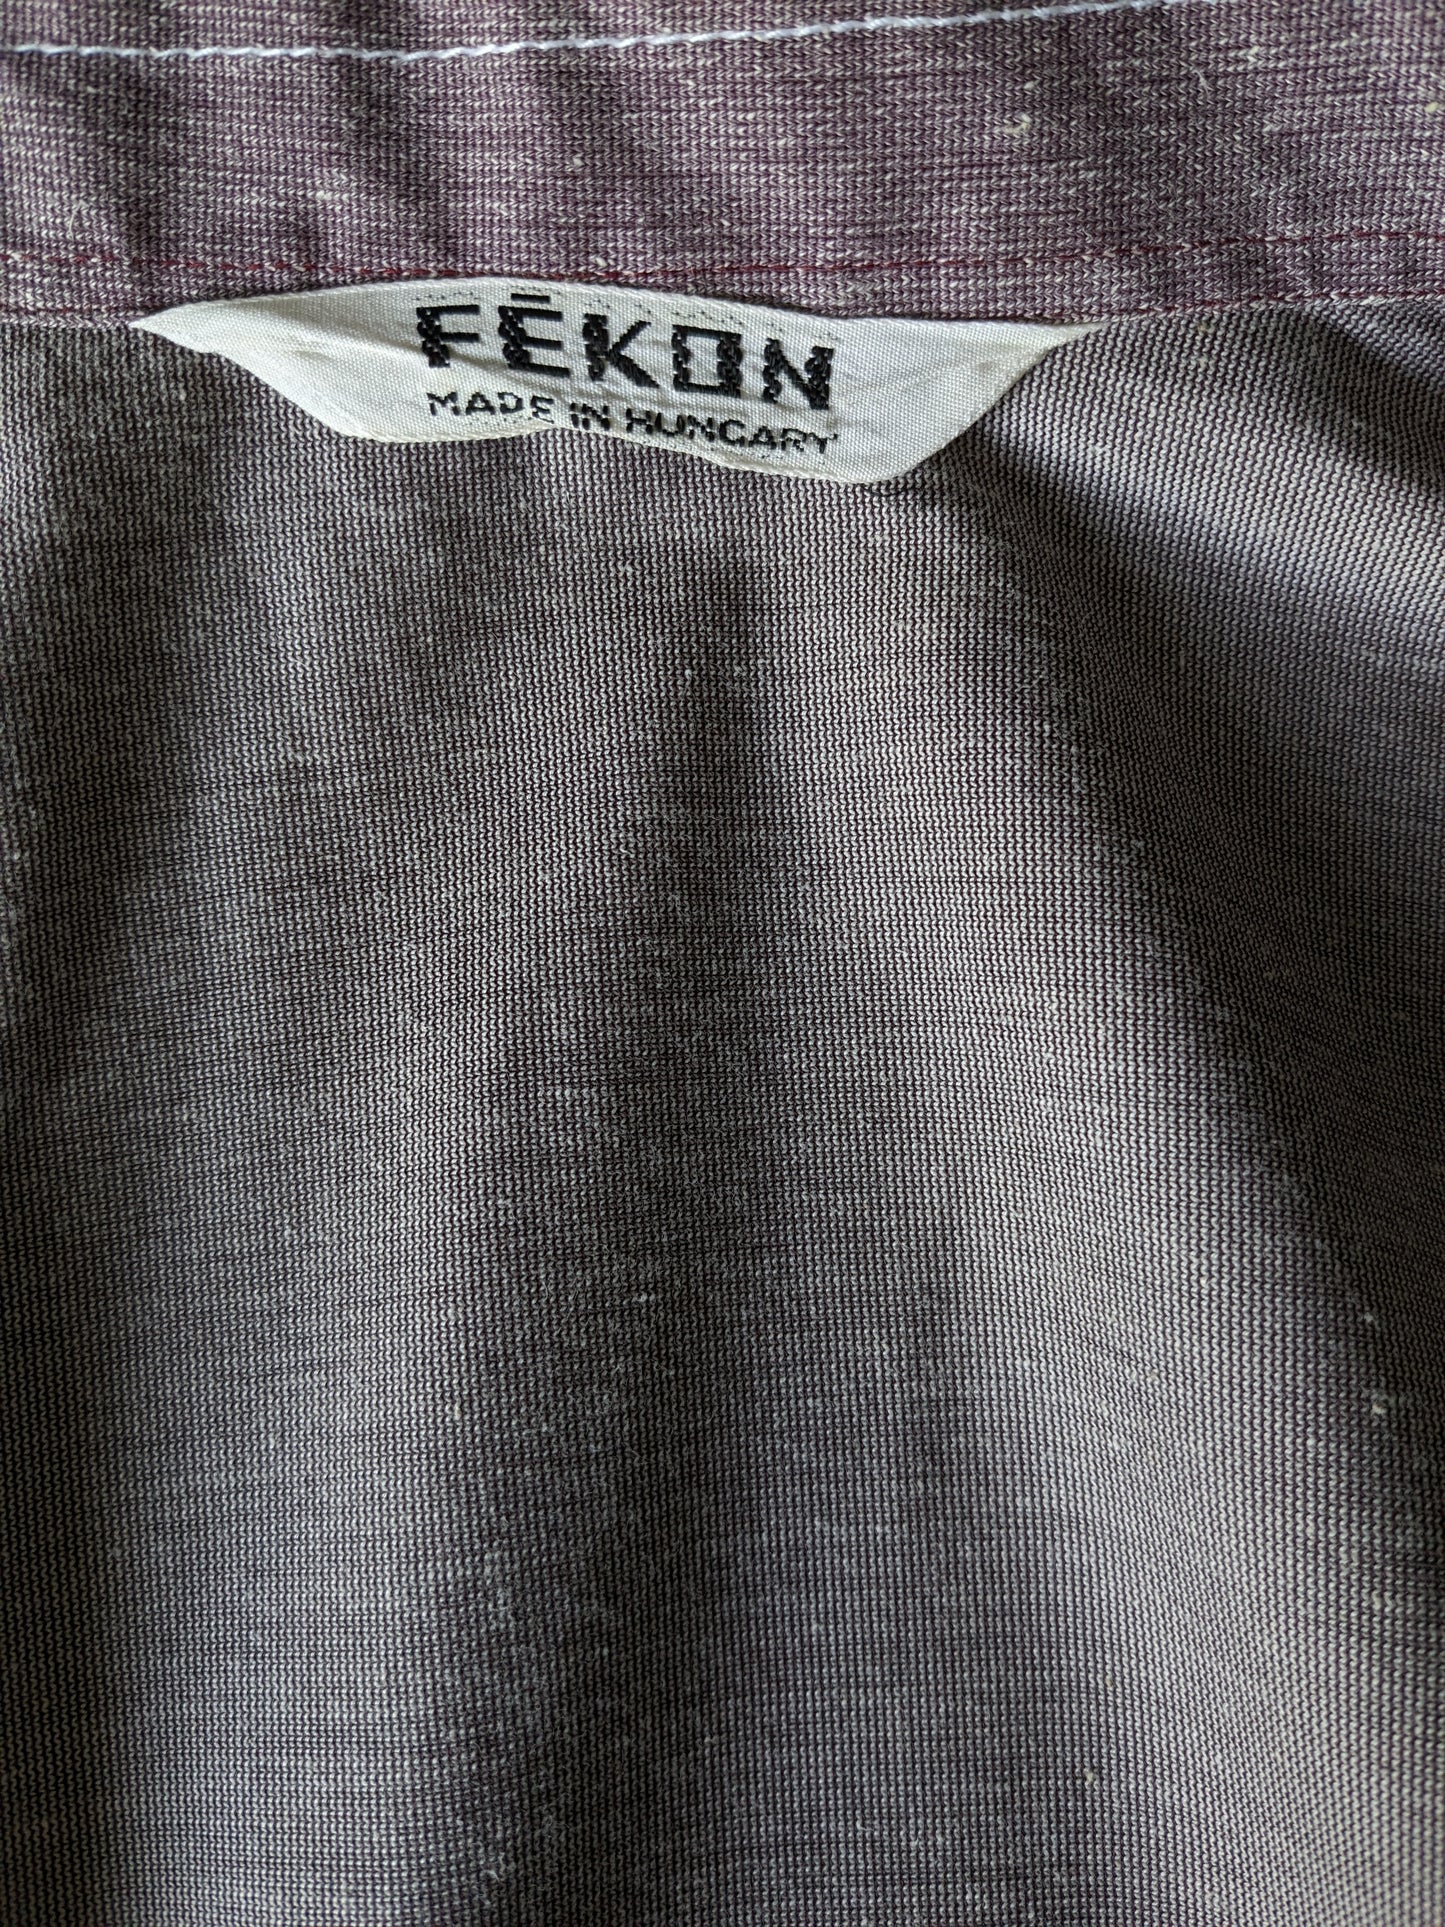 Camisa Vintage Fekon Manga corta con cuello de puntos y pernos de prensa. Blanco púrpura mezclado. Talla M.